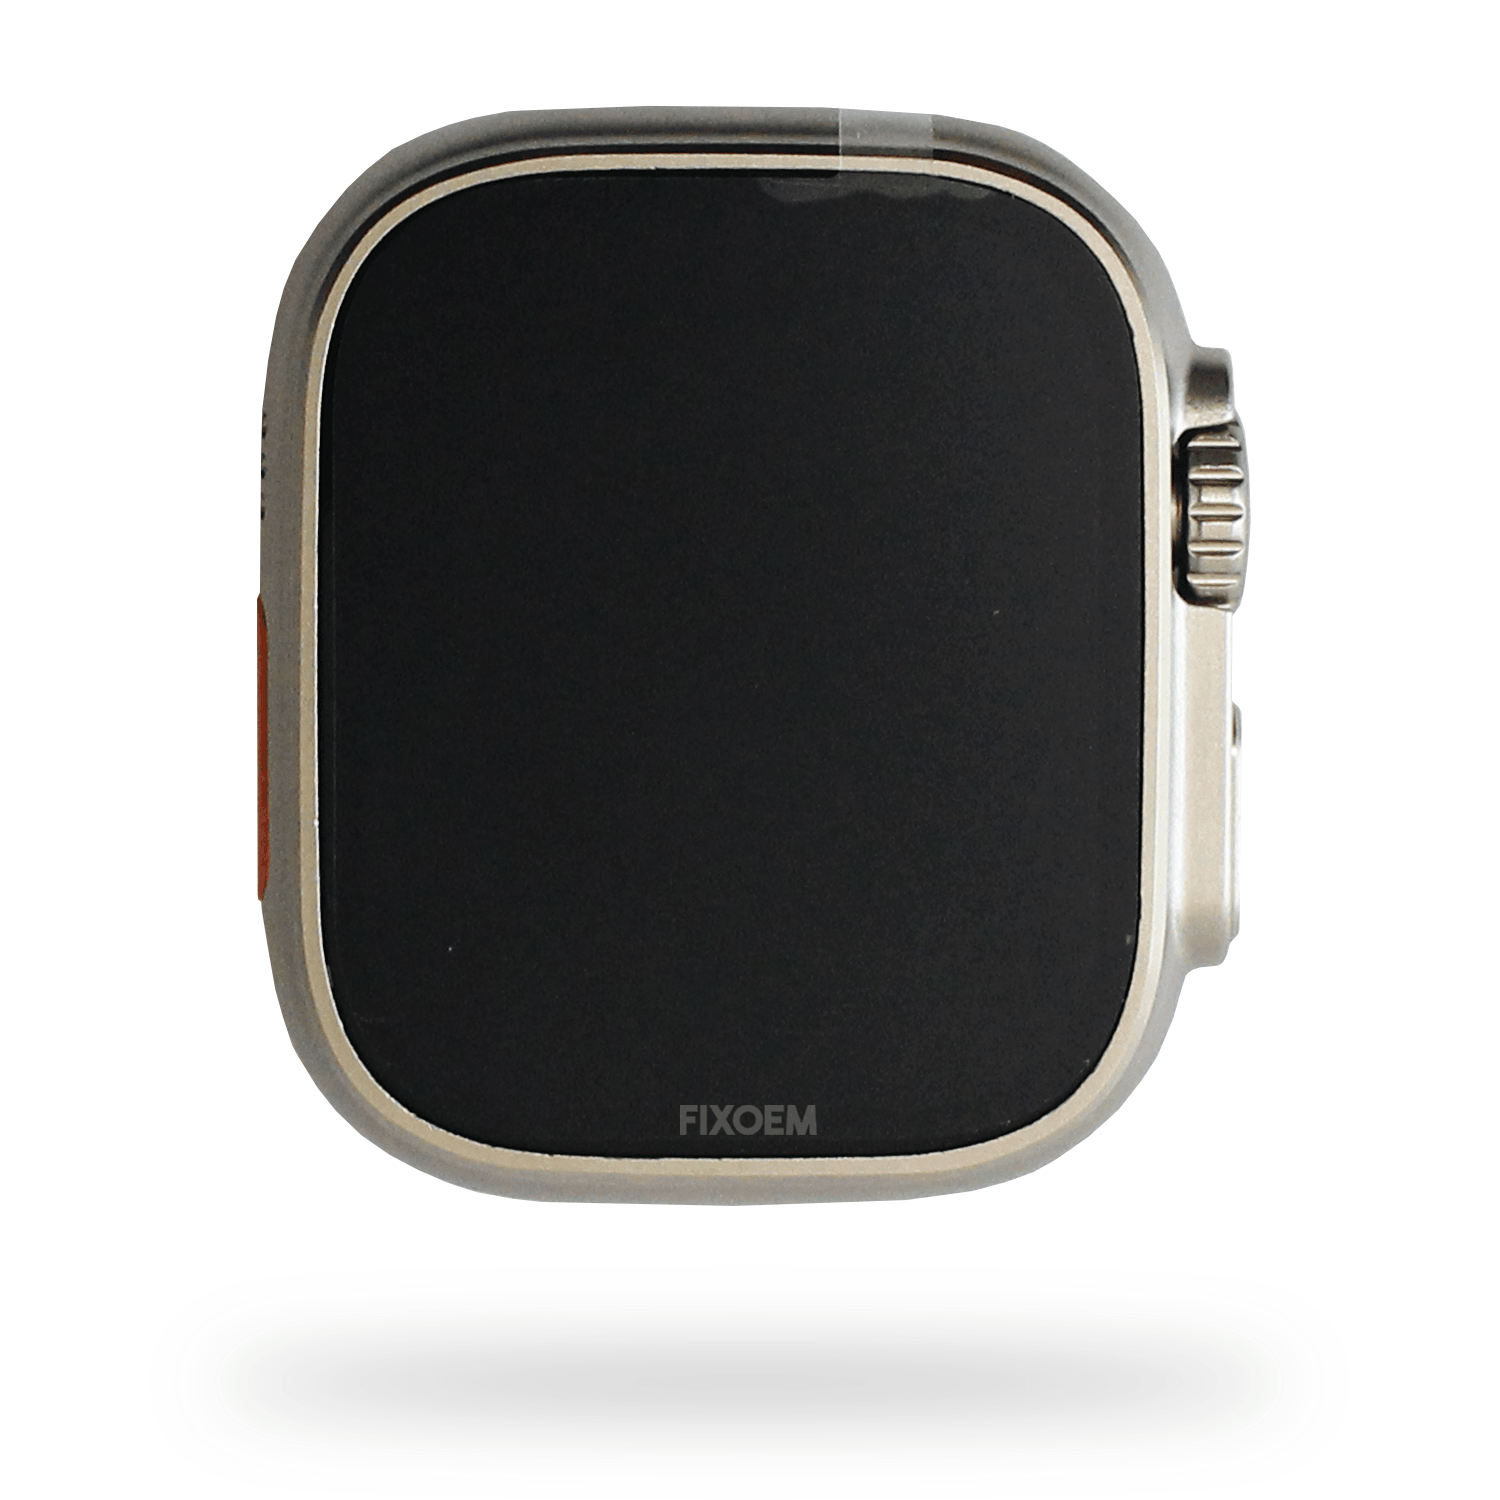 Smart Watch Ultra GPS + Cellular a solo $ 600.00 Refaccion y puestos celulares, refurbish y microelectronica.- FixOEM